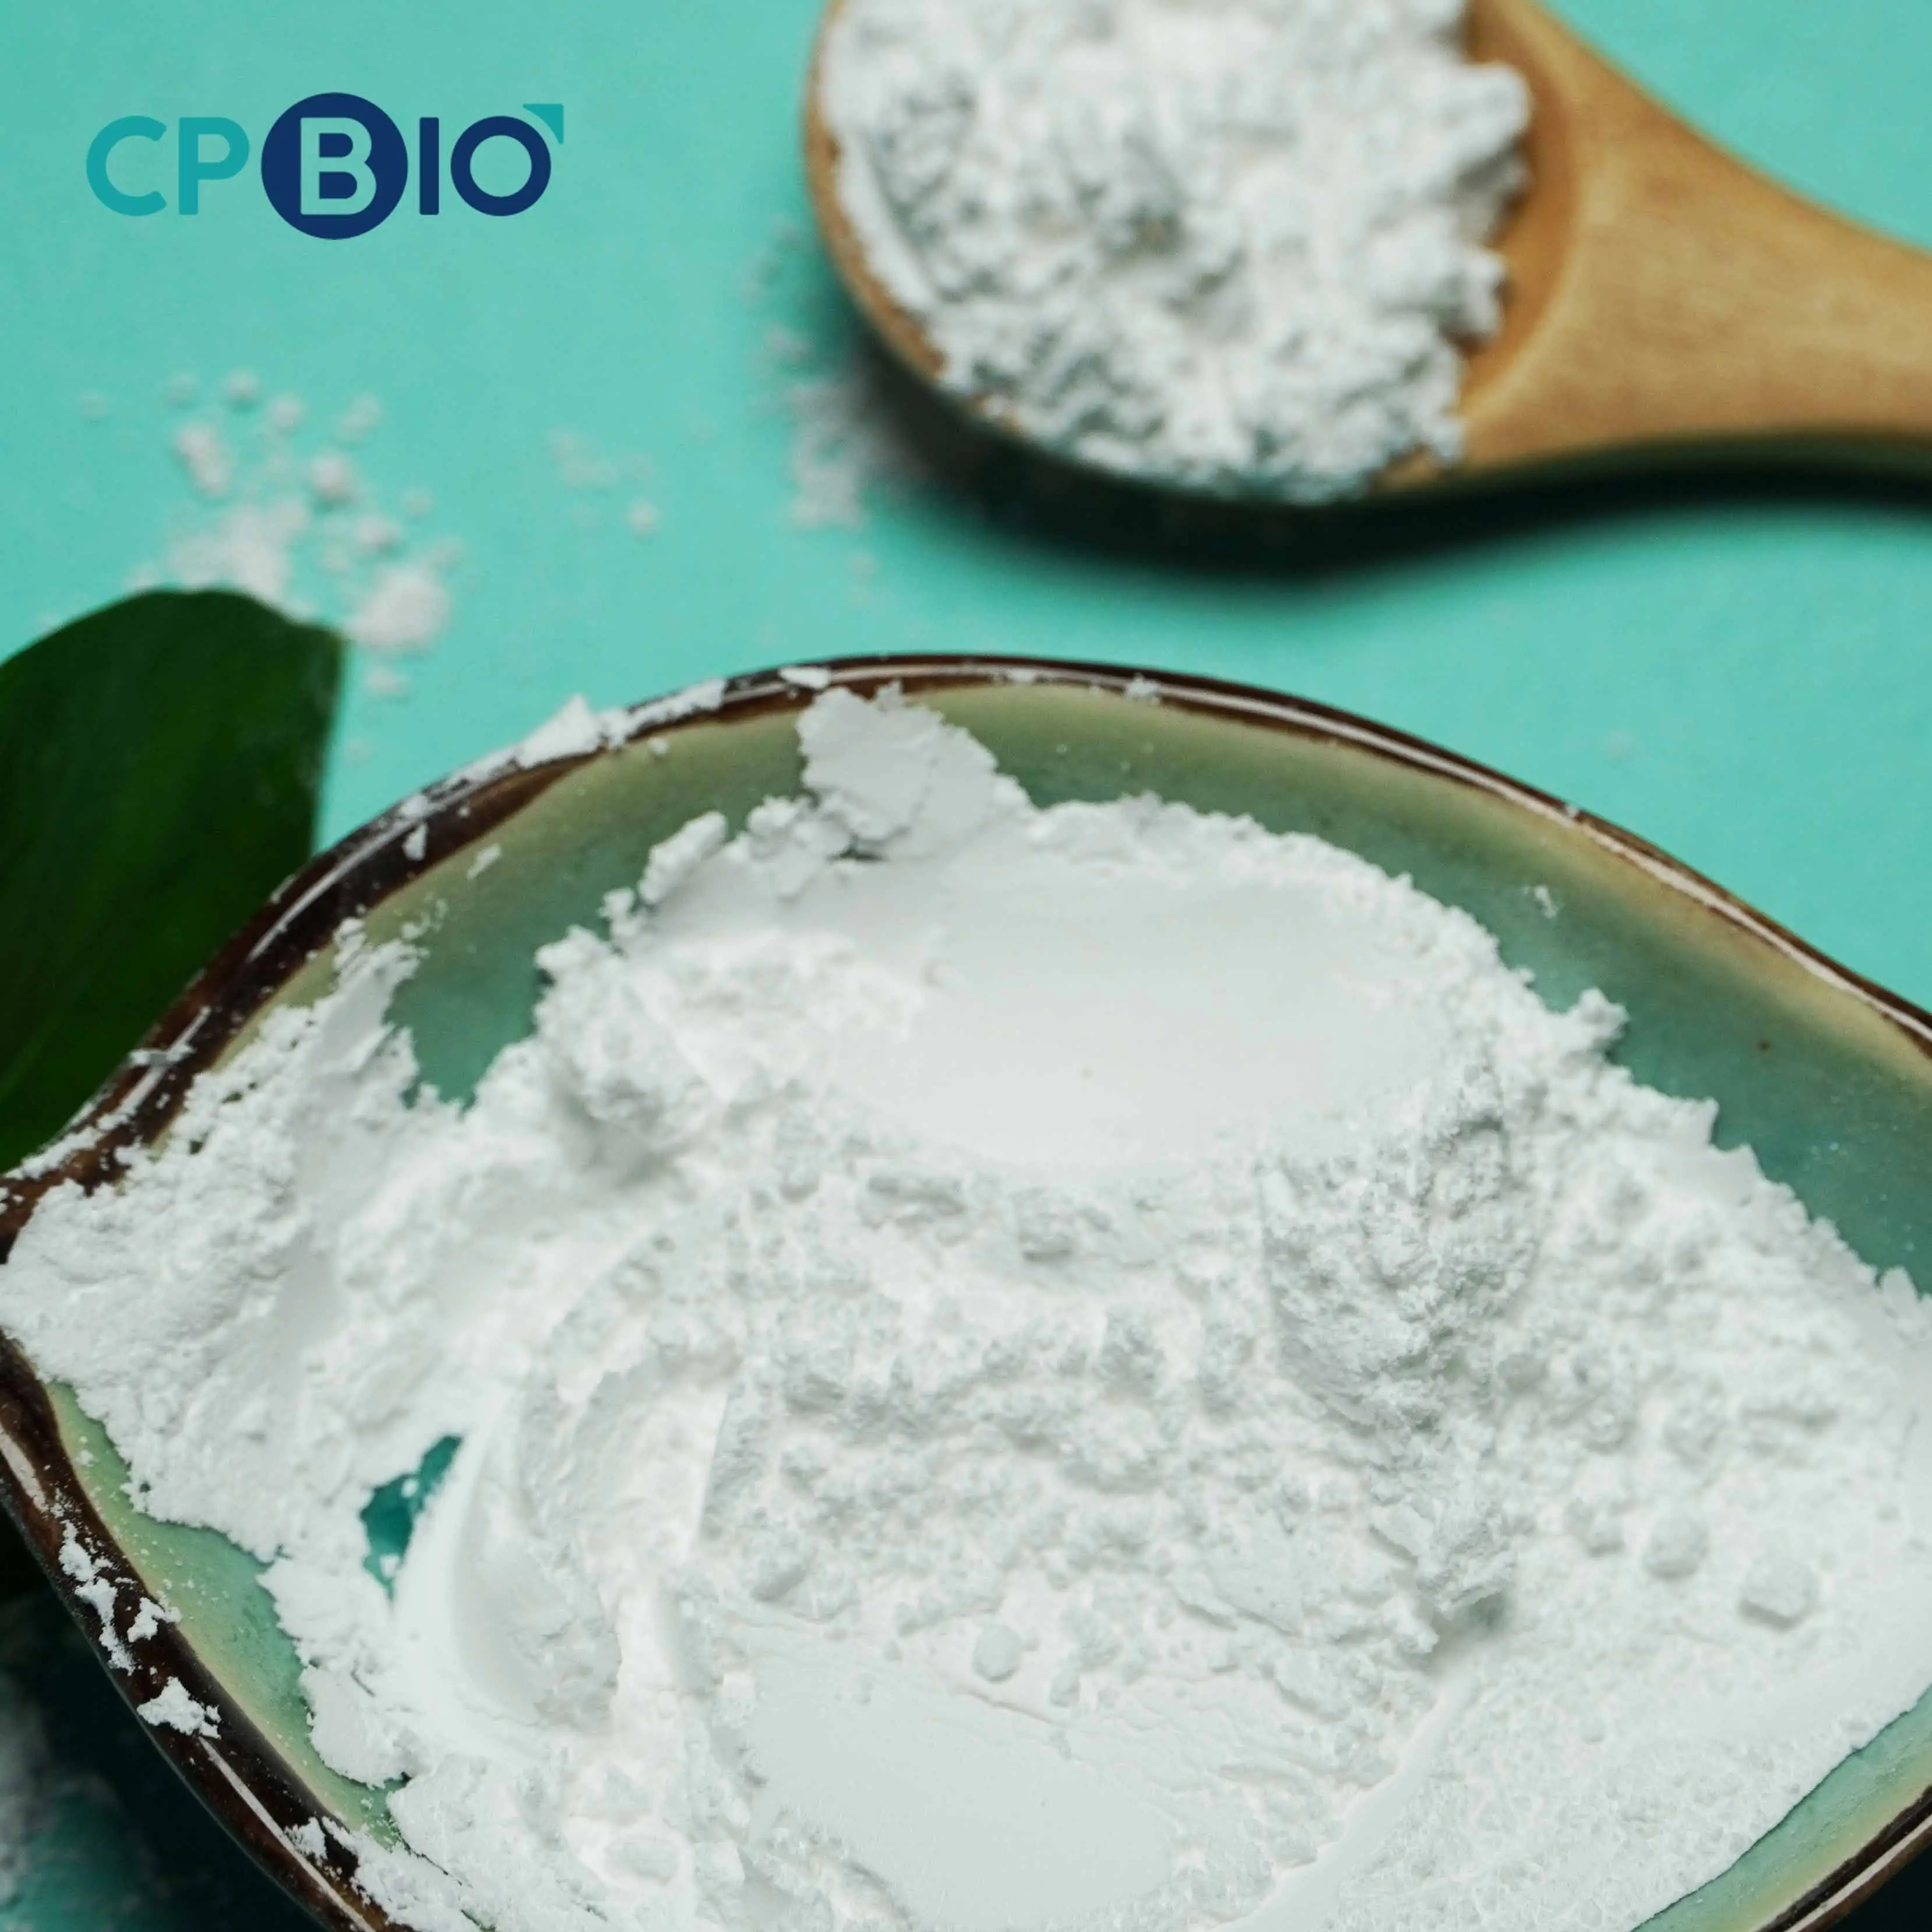 CPBIO Bulk-Natrium bi karbonat/Bicarbonat De Sodium/Backpulver in Lebensmittel qualität